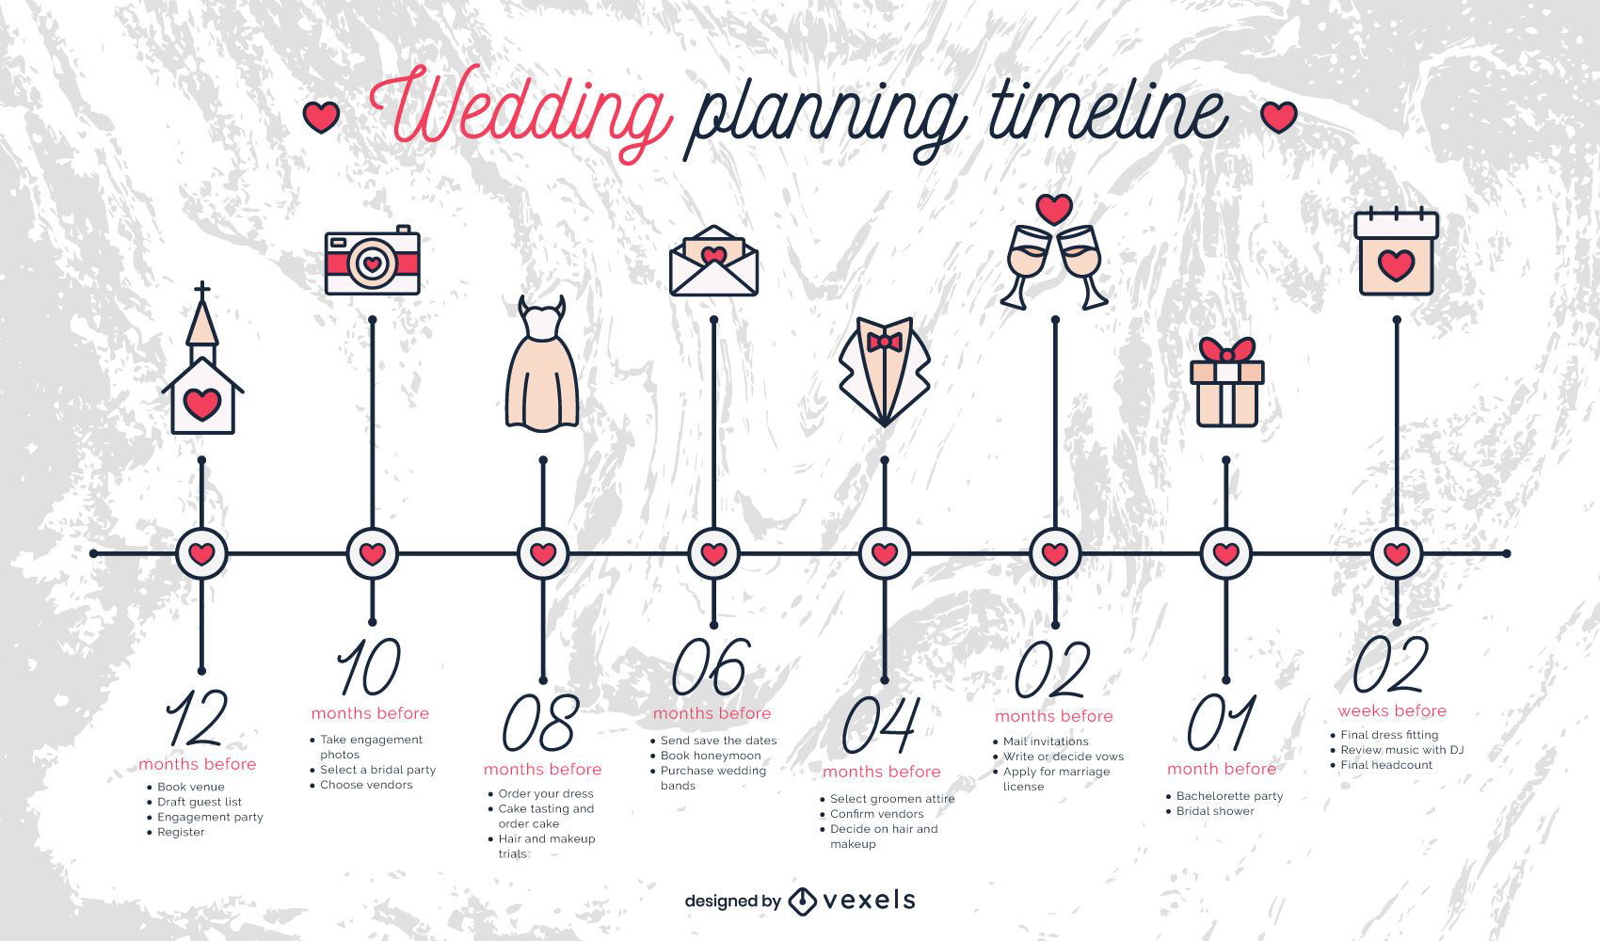 Zeitplan für die Hochzeitsplanung